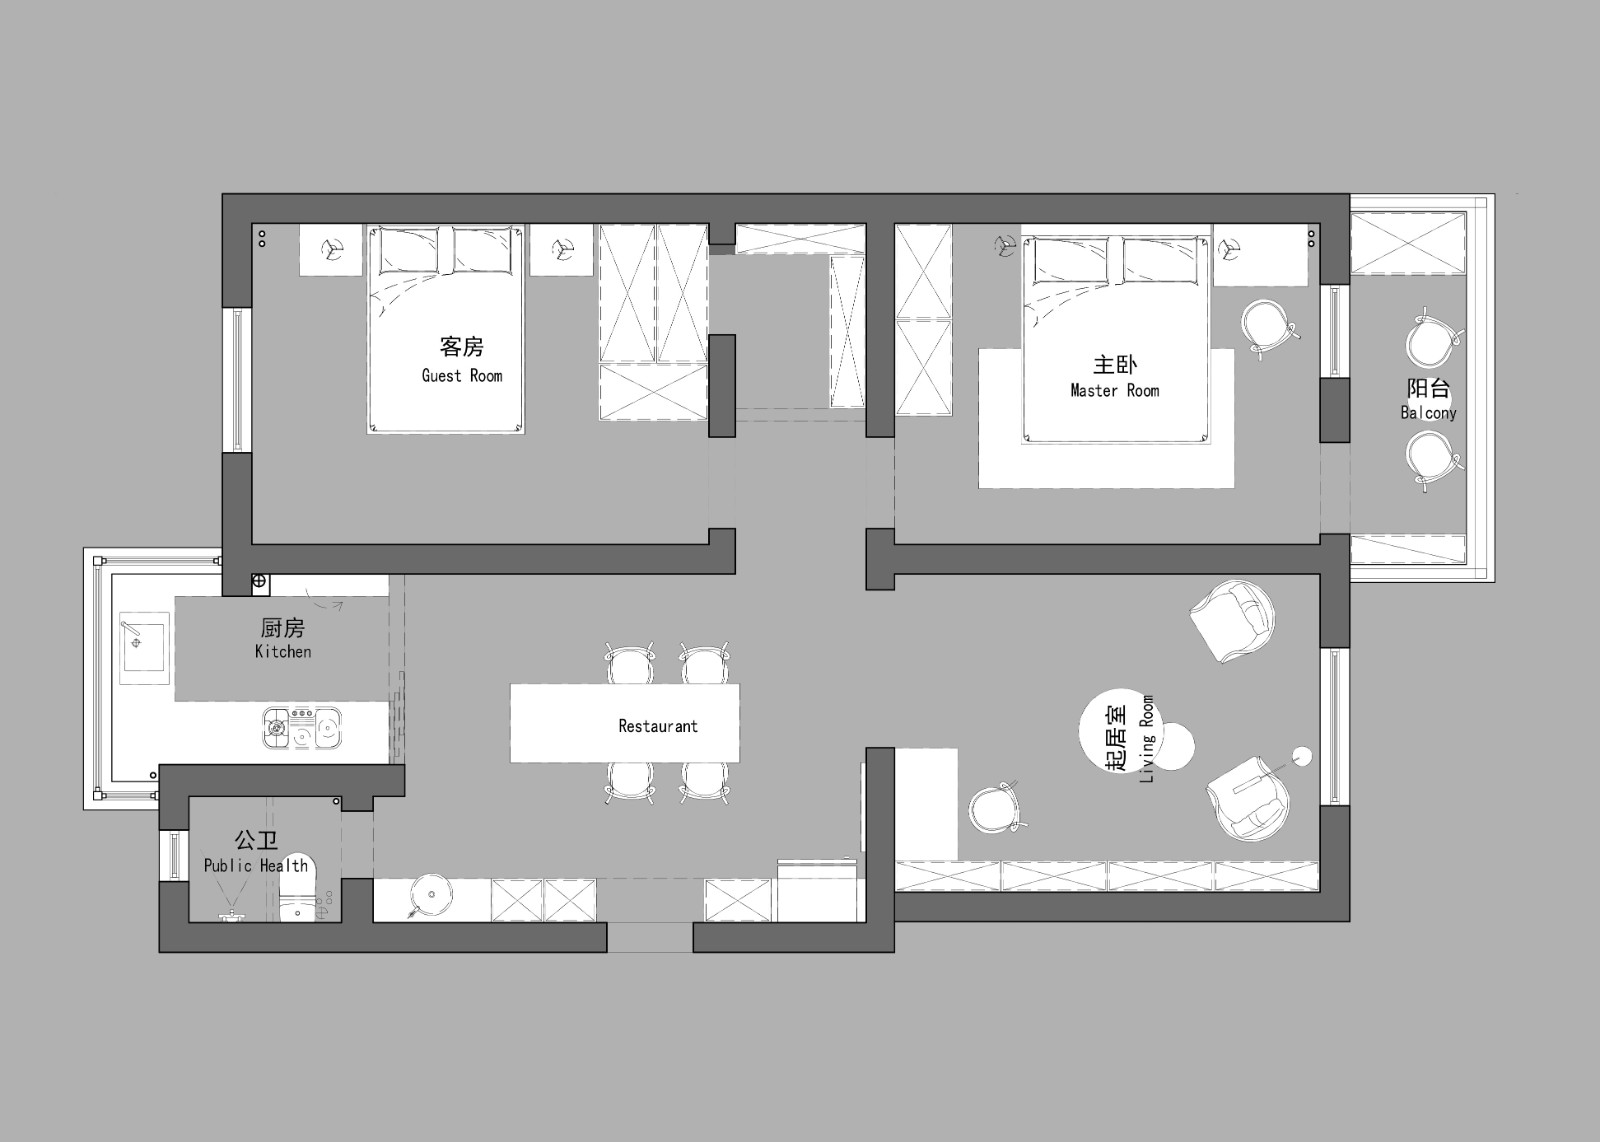 108现代三房装修效果图,理想生活的现实化装修案例效果图-美广网